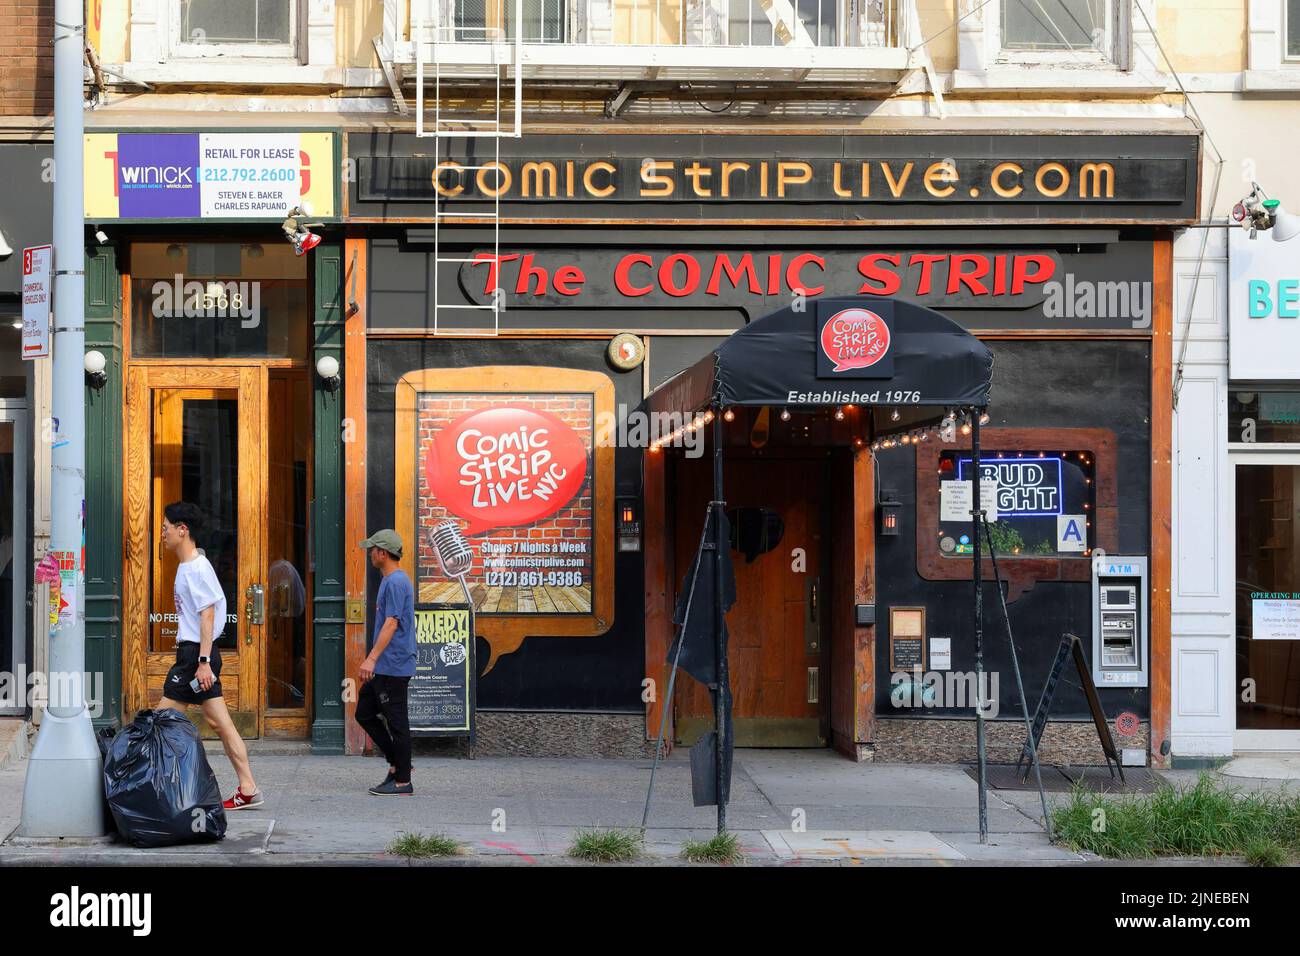 Comic Strip Live, 1568 2nd Ave, Nueva York, Nueva York, Nueva York, foto del escaparate de un club de comedia en el barrio Upper East Side en Manhattan. Foto de stock